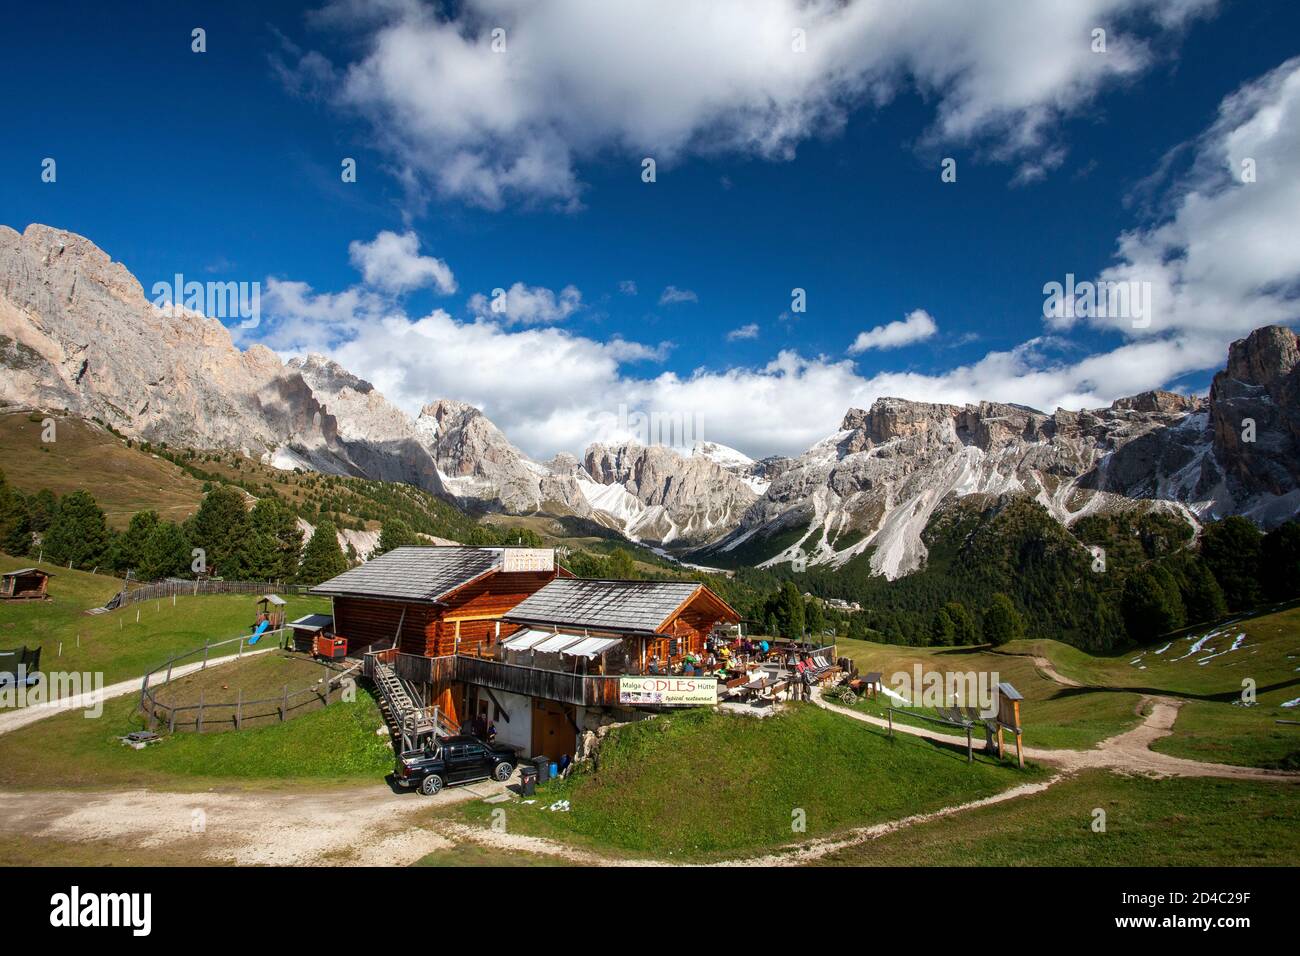 Die Baita Odles Rifugio/ Hütte Ist offen für Geschäfte unter blauem Himmel mit einem atemberaubenden Hintergrund der Geisler Gruppe von Dolomitengipfeln Stockfoto